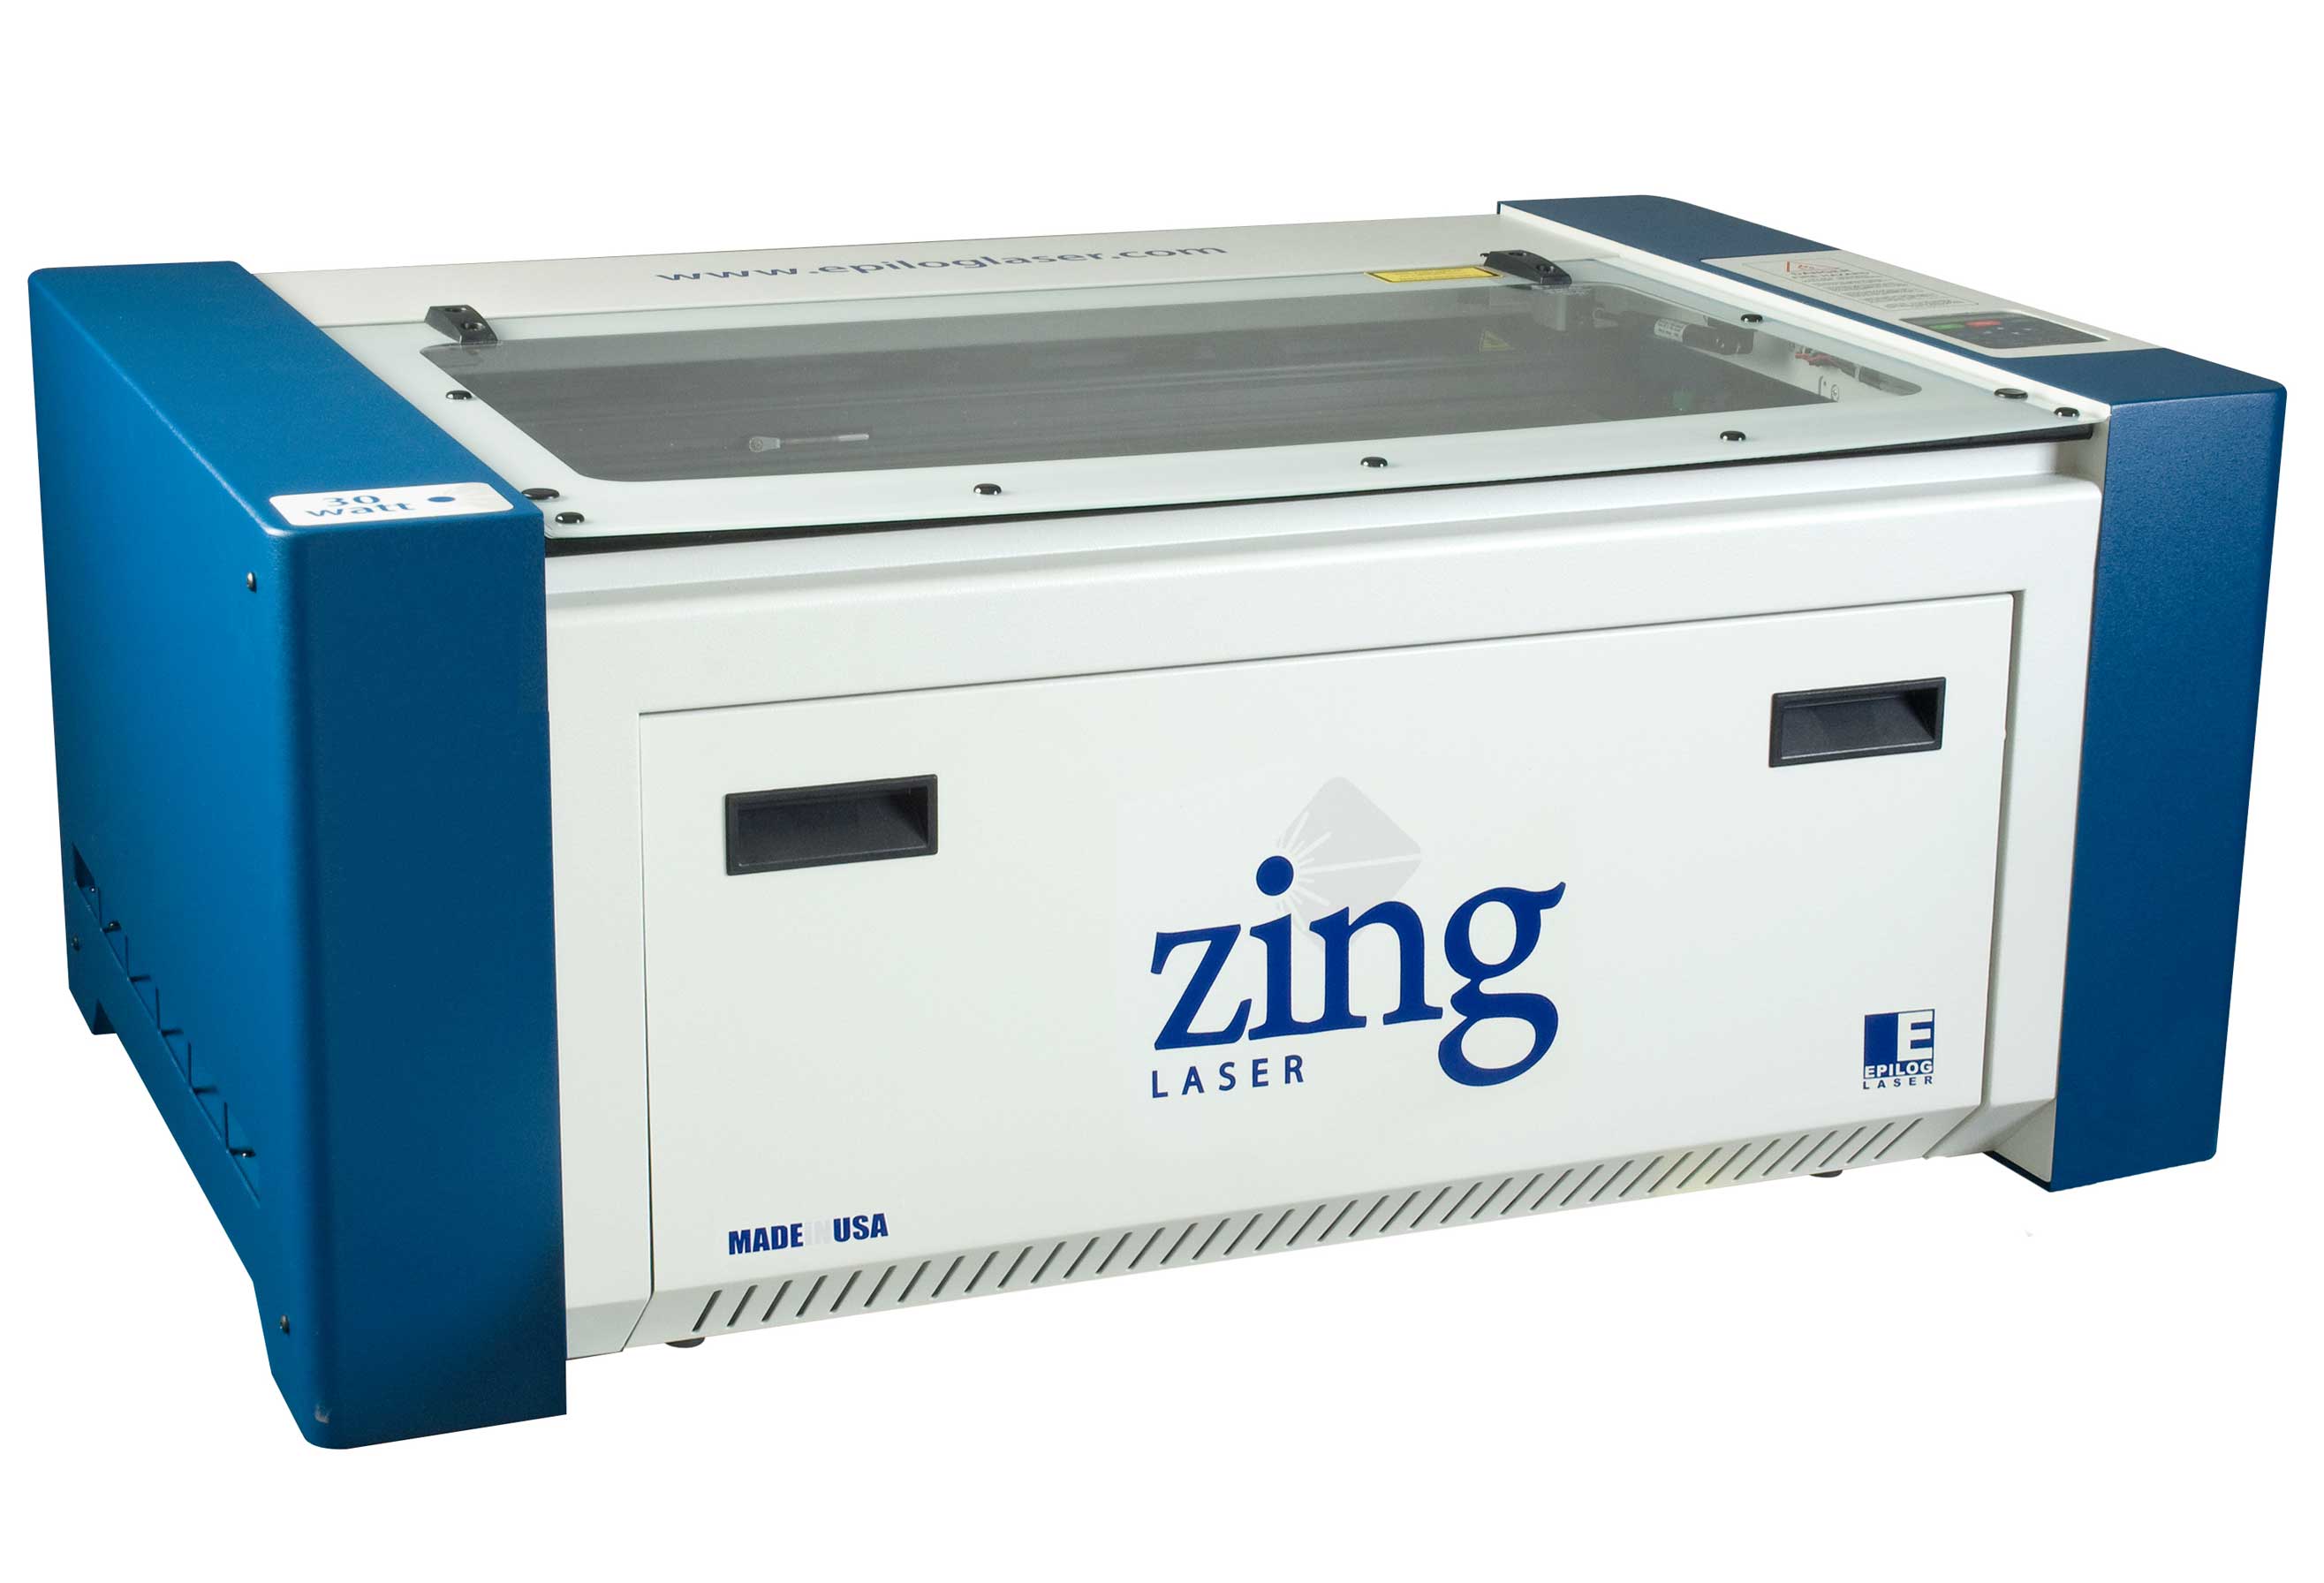  Epilog Zing 24 Laser System 